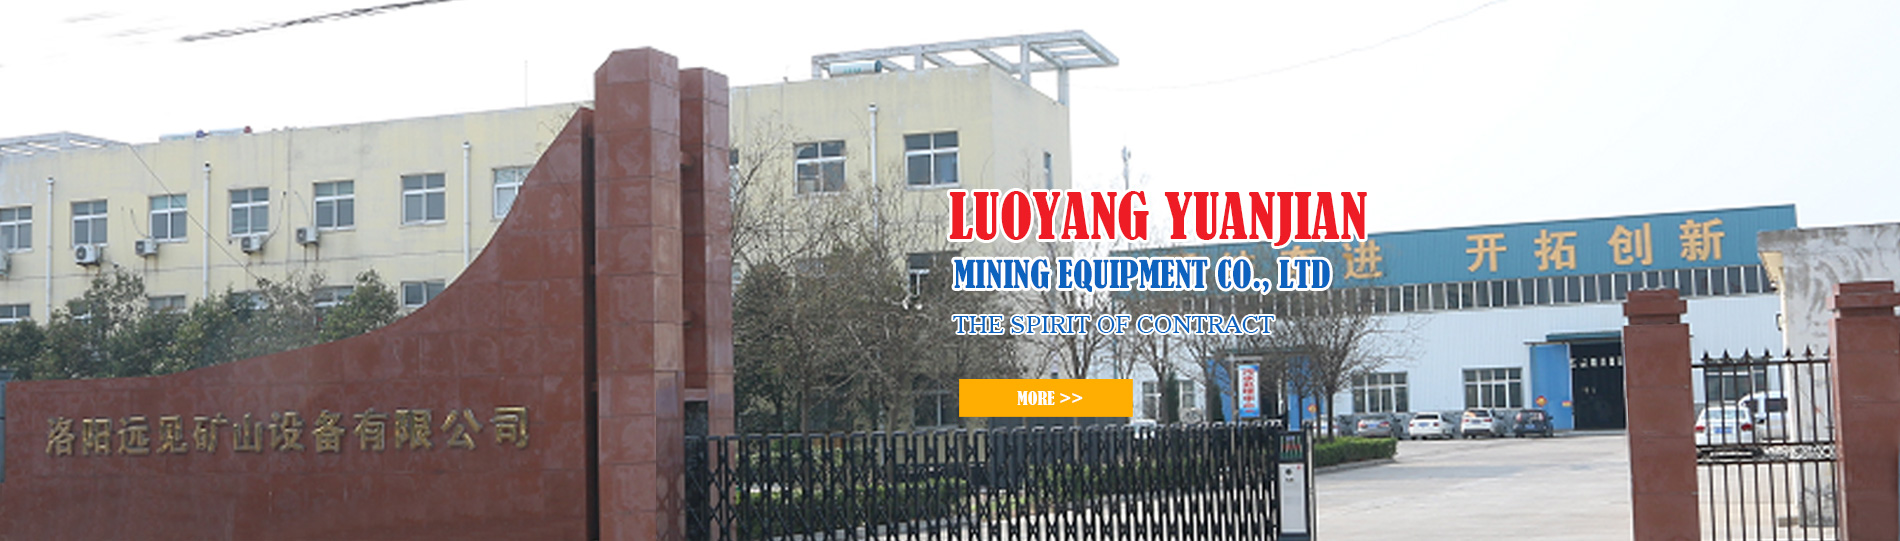 Luoyang Yuanjian mining equipment Co., Ltd